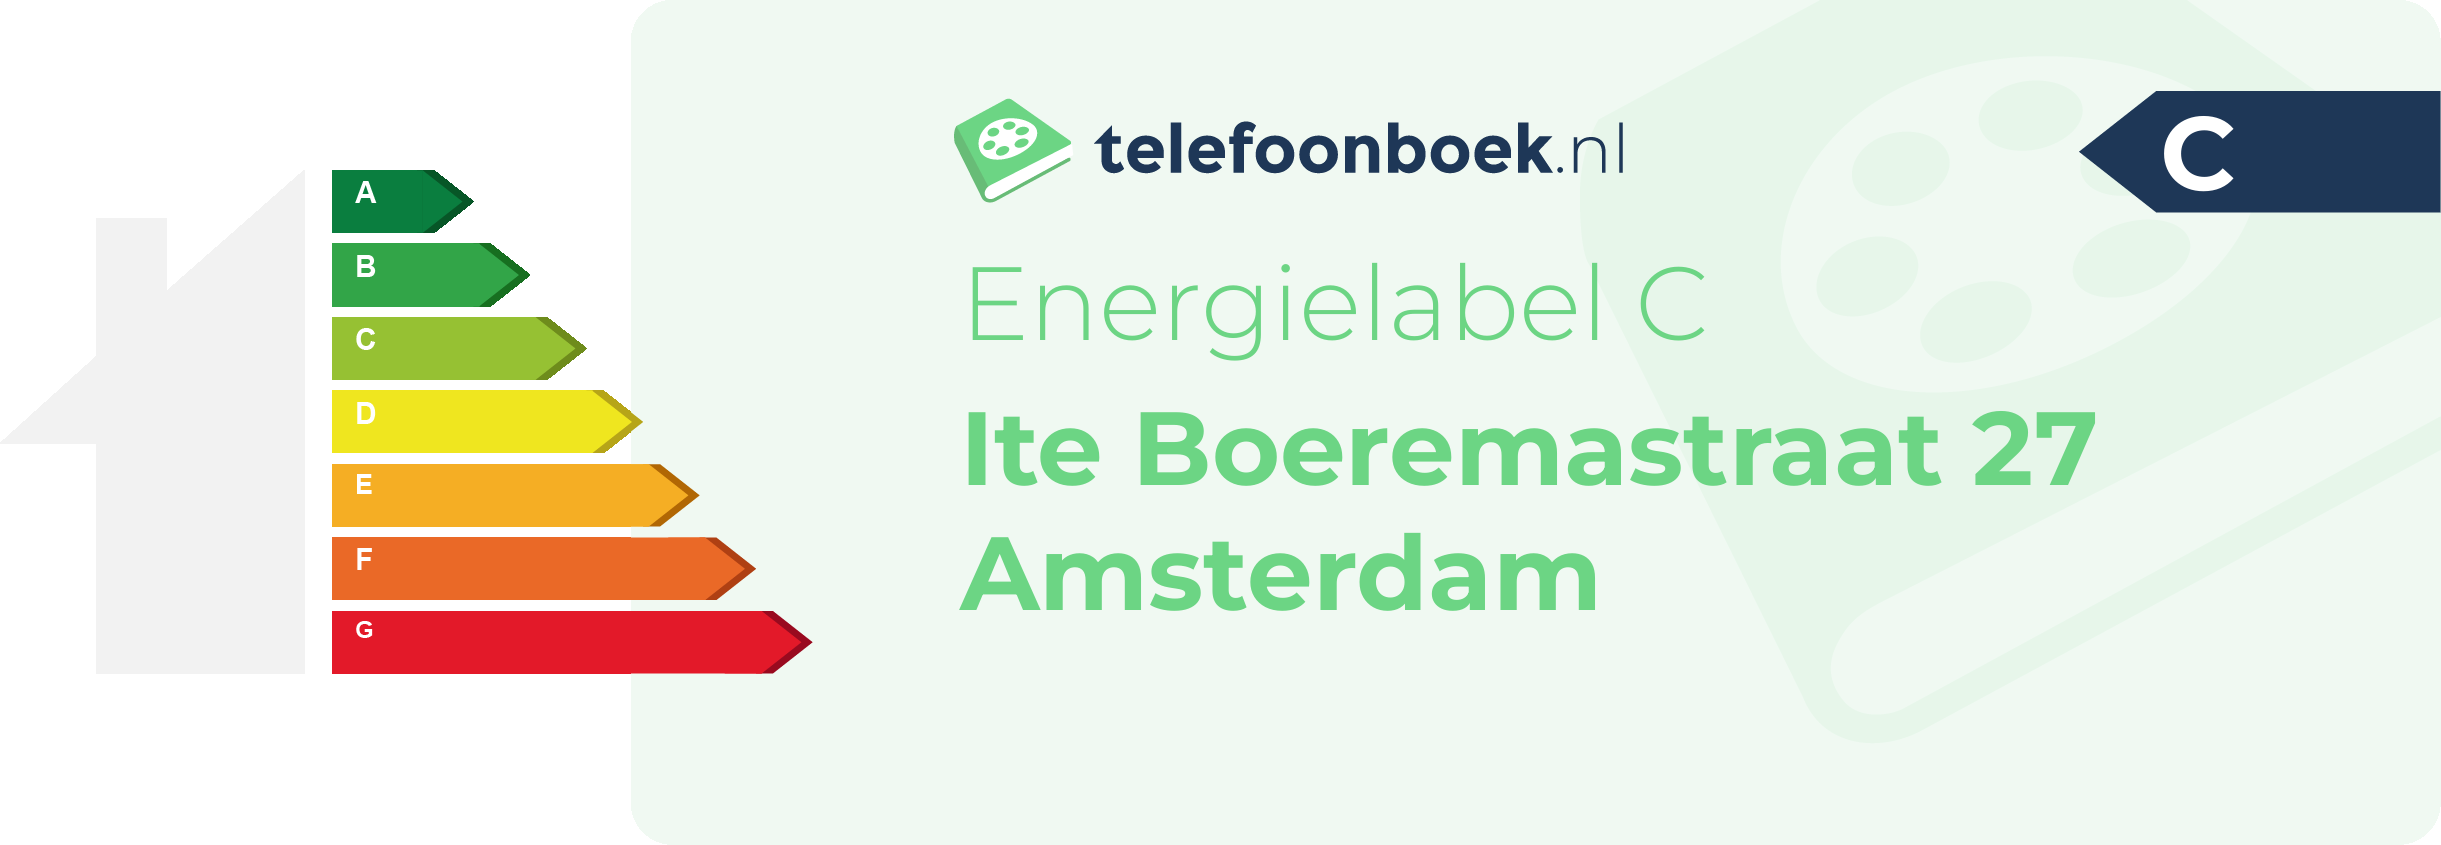 Energielabel Ite Boeremastraat 27 Amsterdam